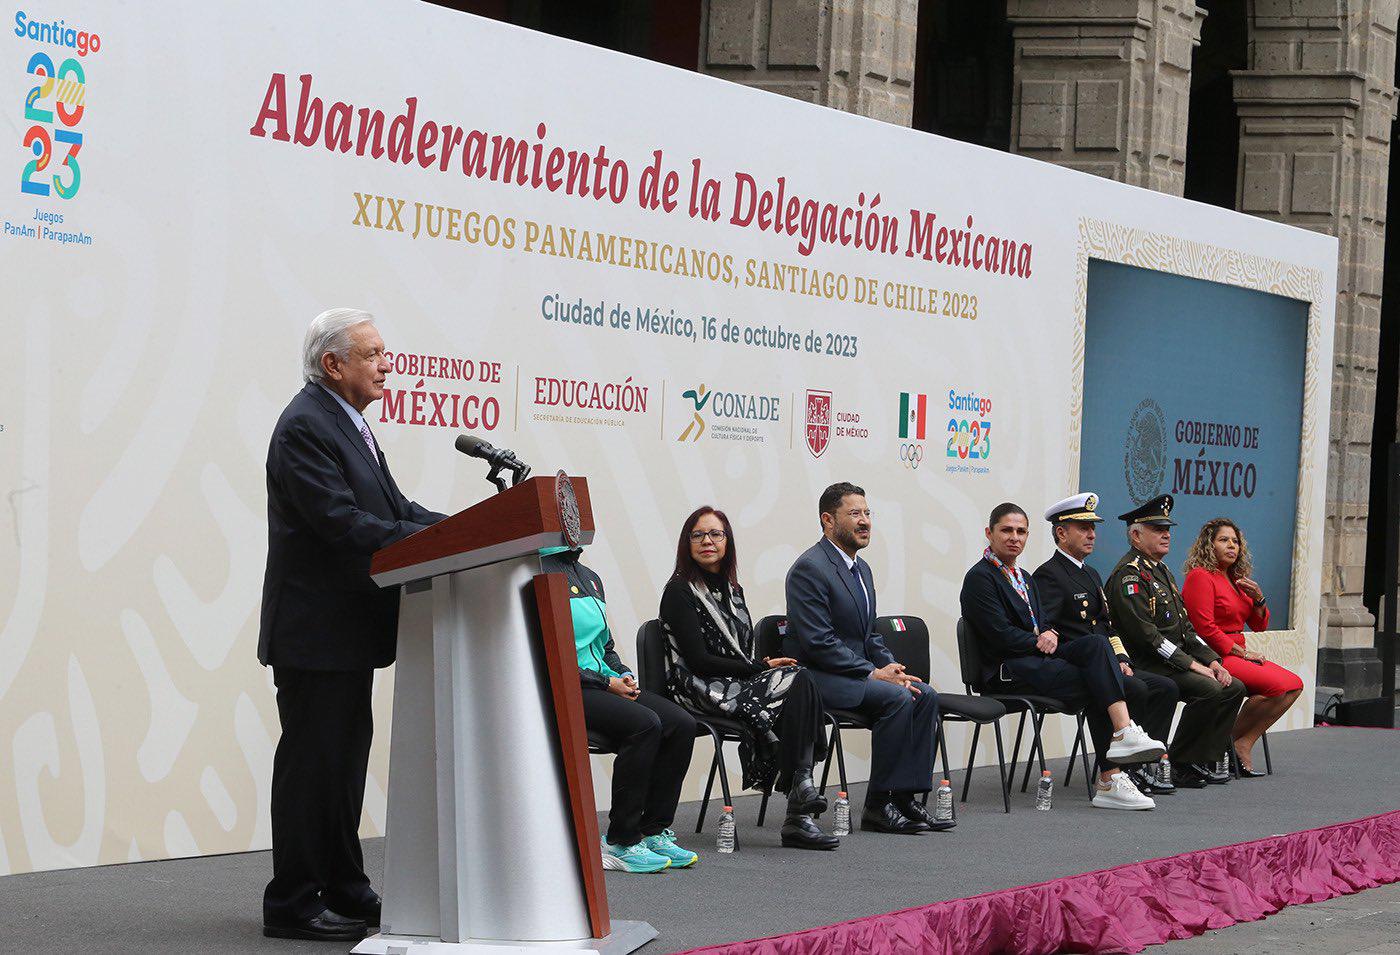 $!Andrés Manuel López Obrador encabeza abanderamiento de la delegación mexicana que irá a los Panamericanos